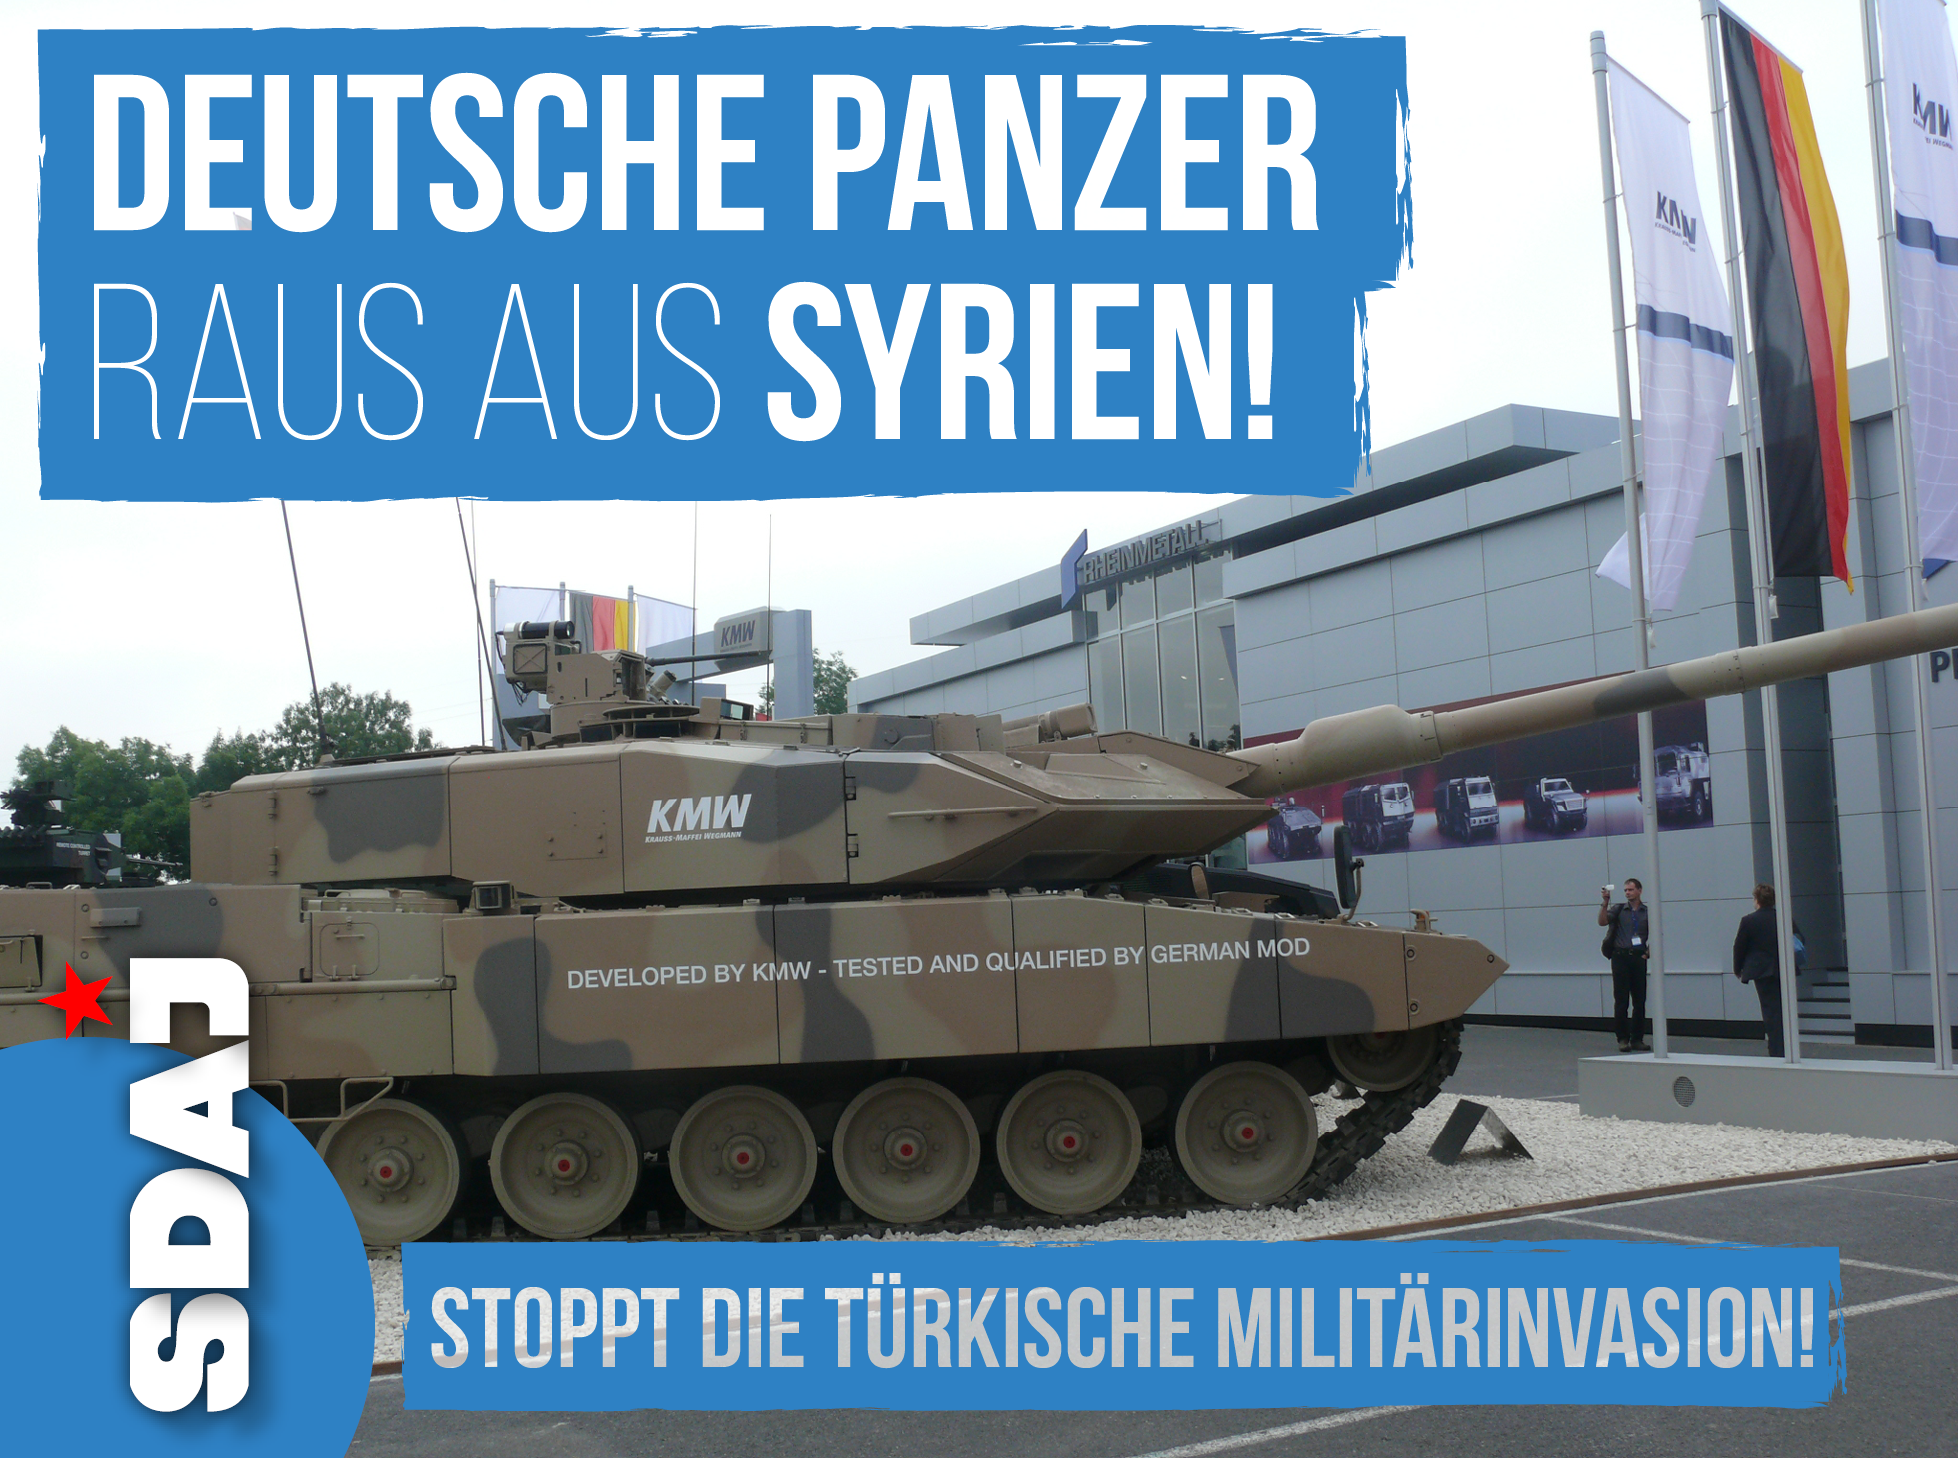 Frieden für Syrien! Türkische Militärinvasion stoppen!